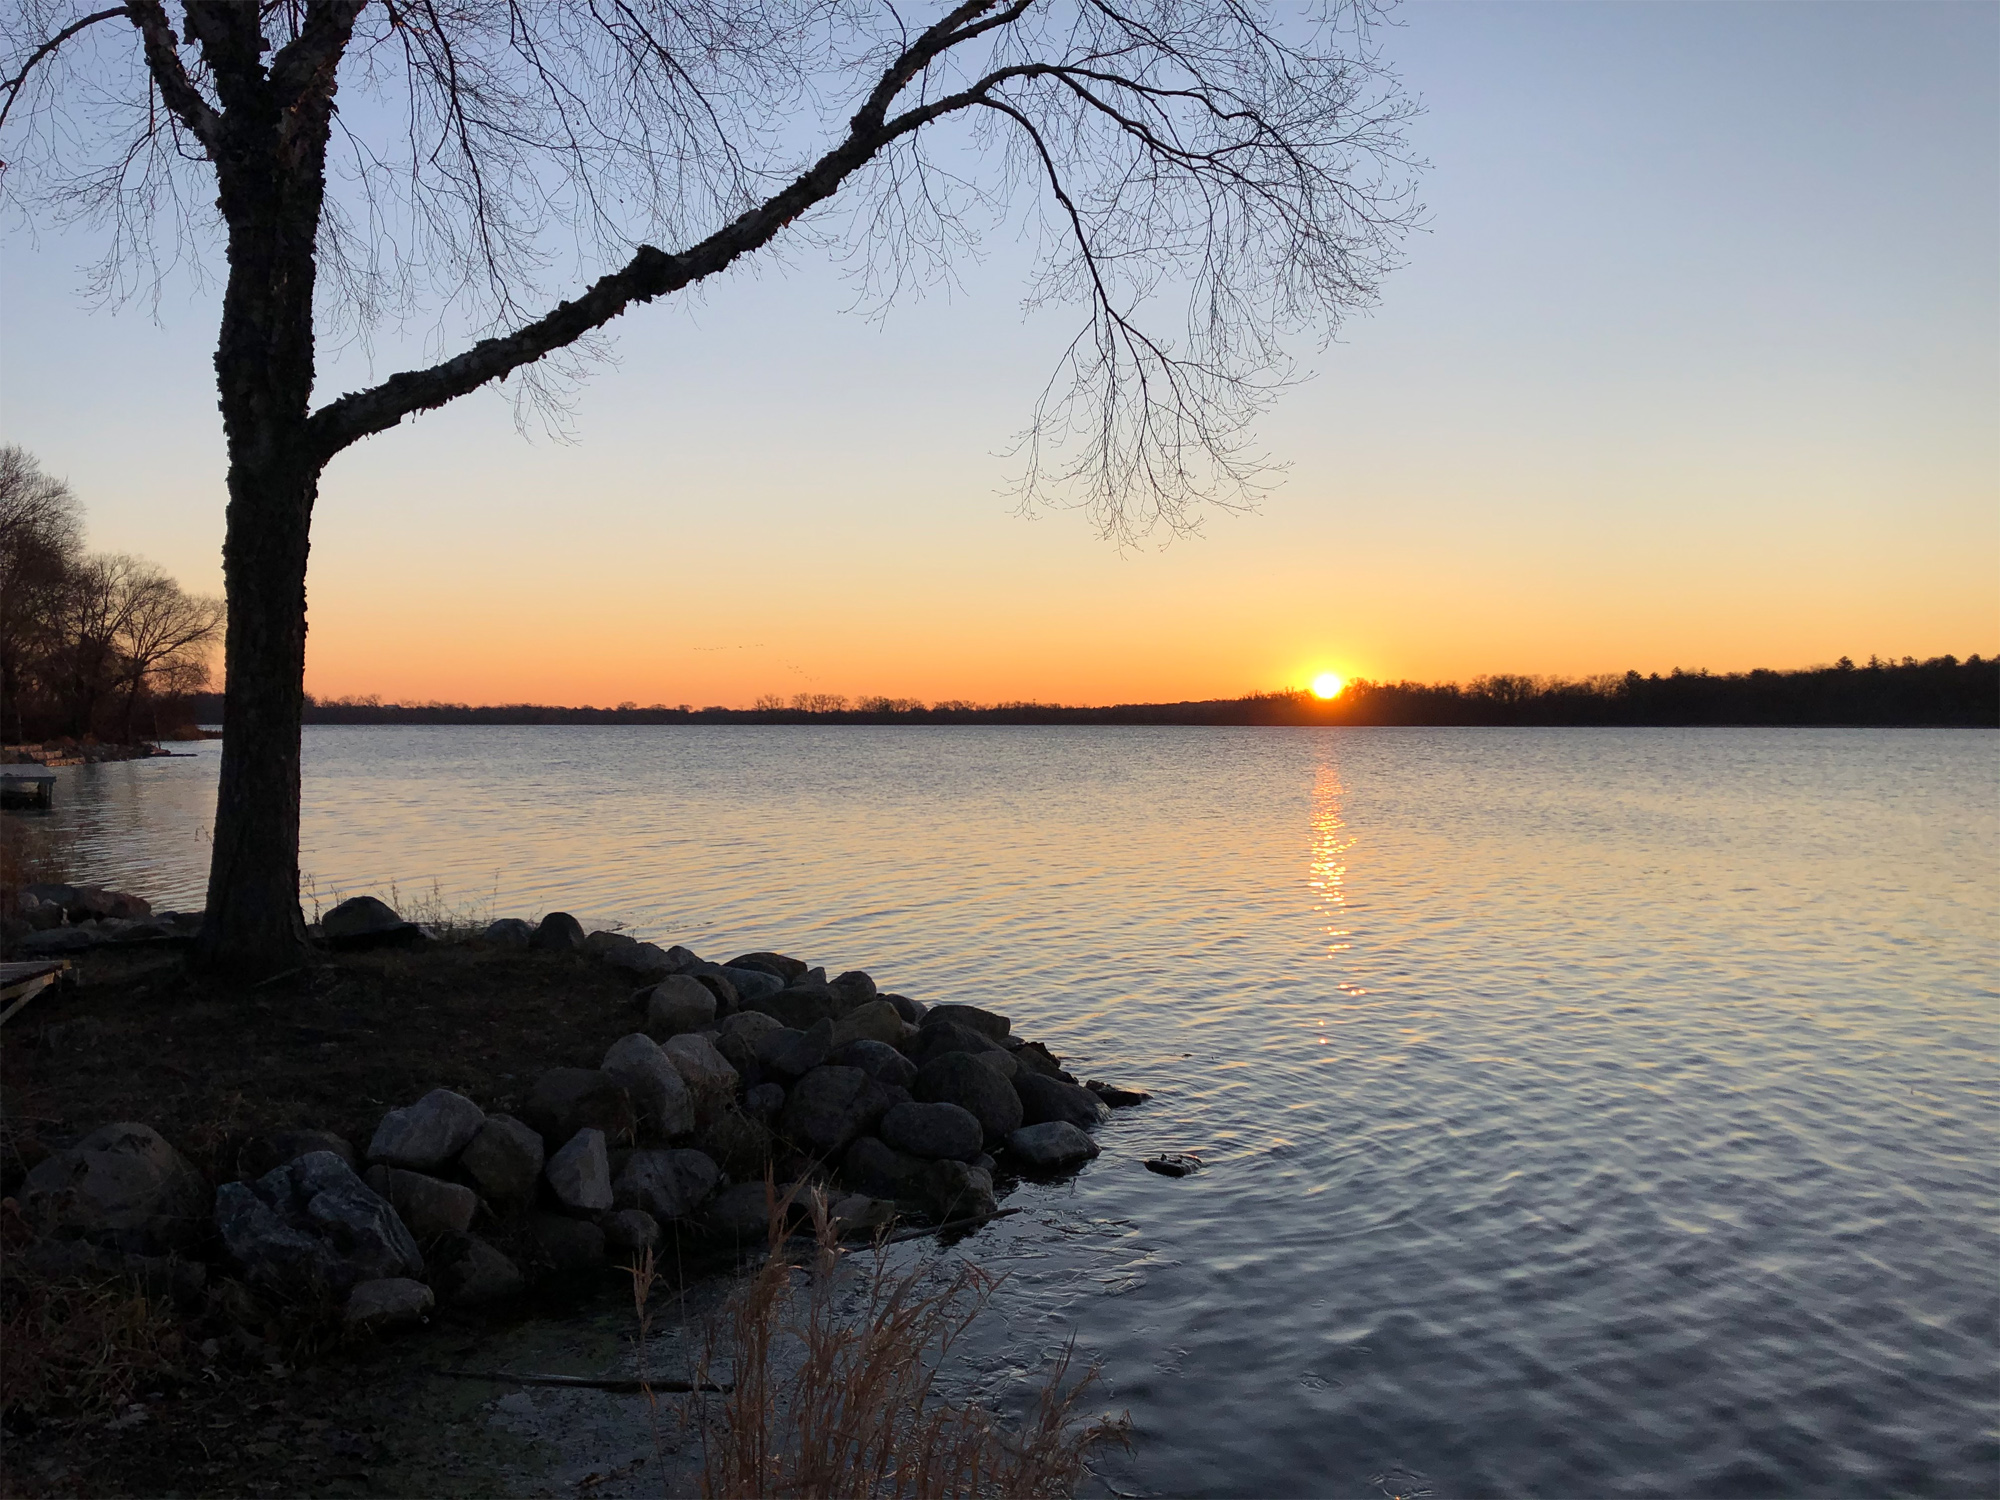 Lake Wingra on December 4, 2019.